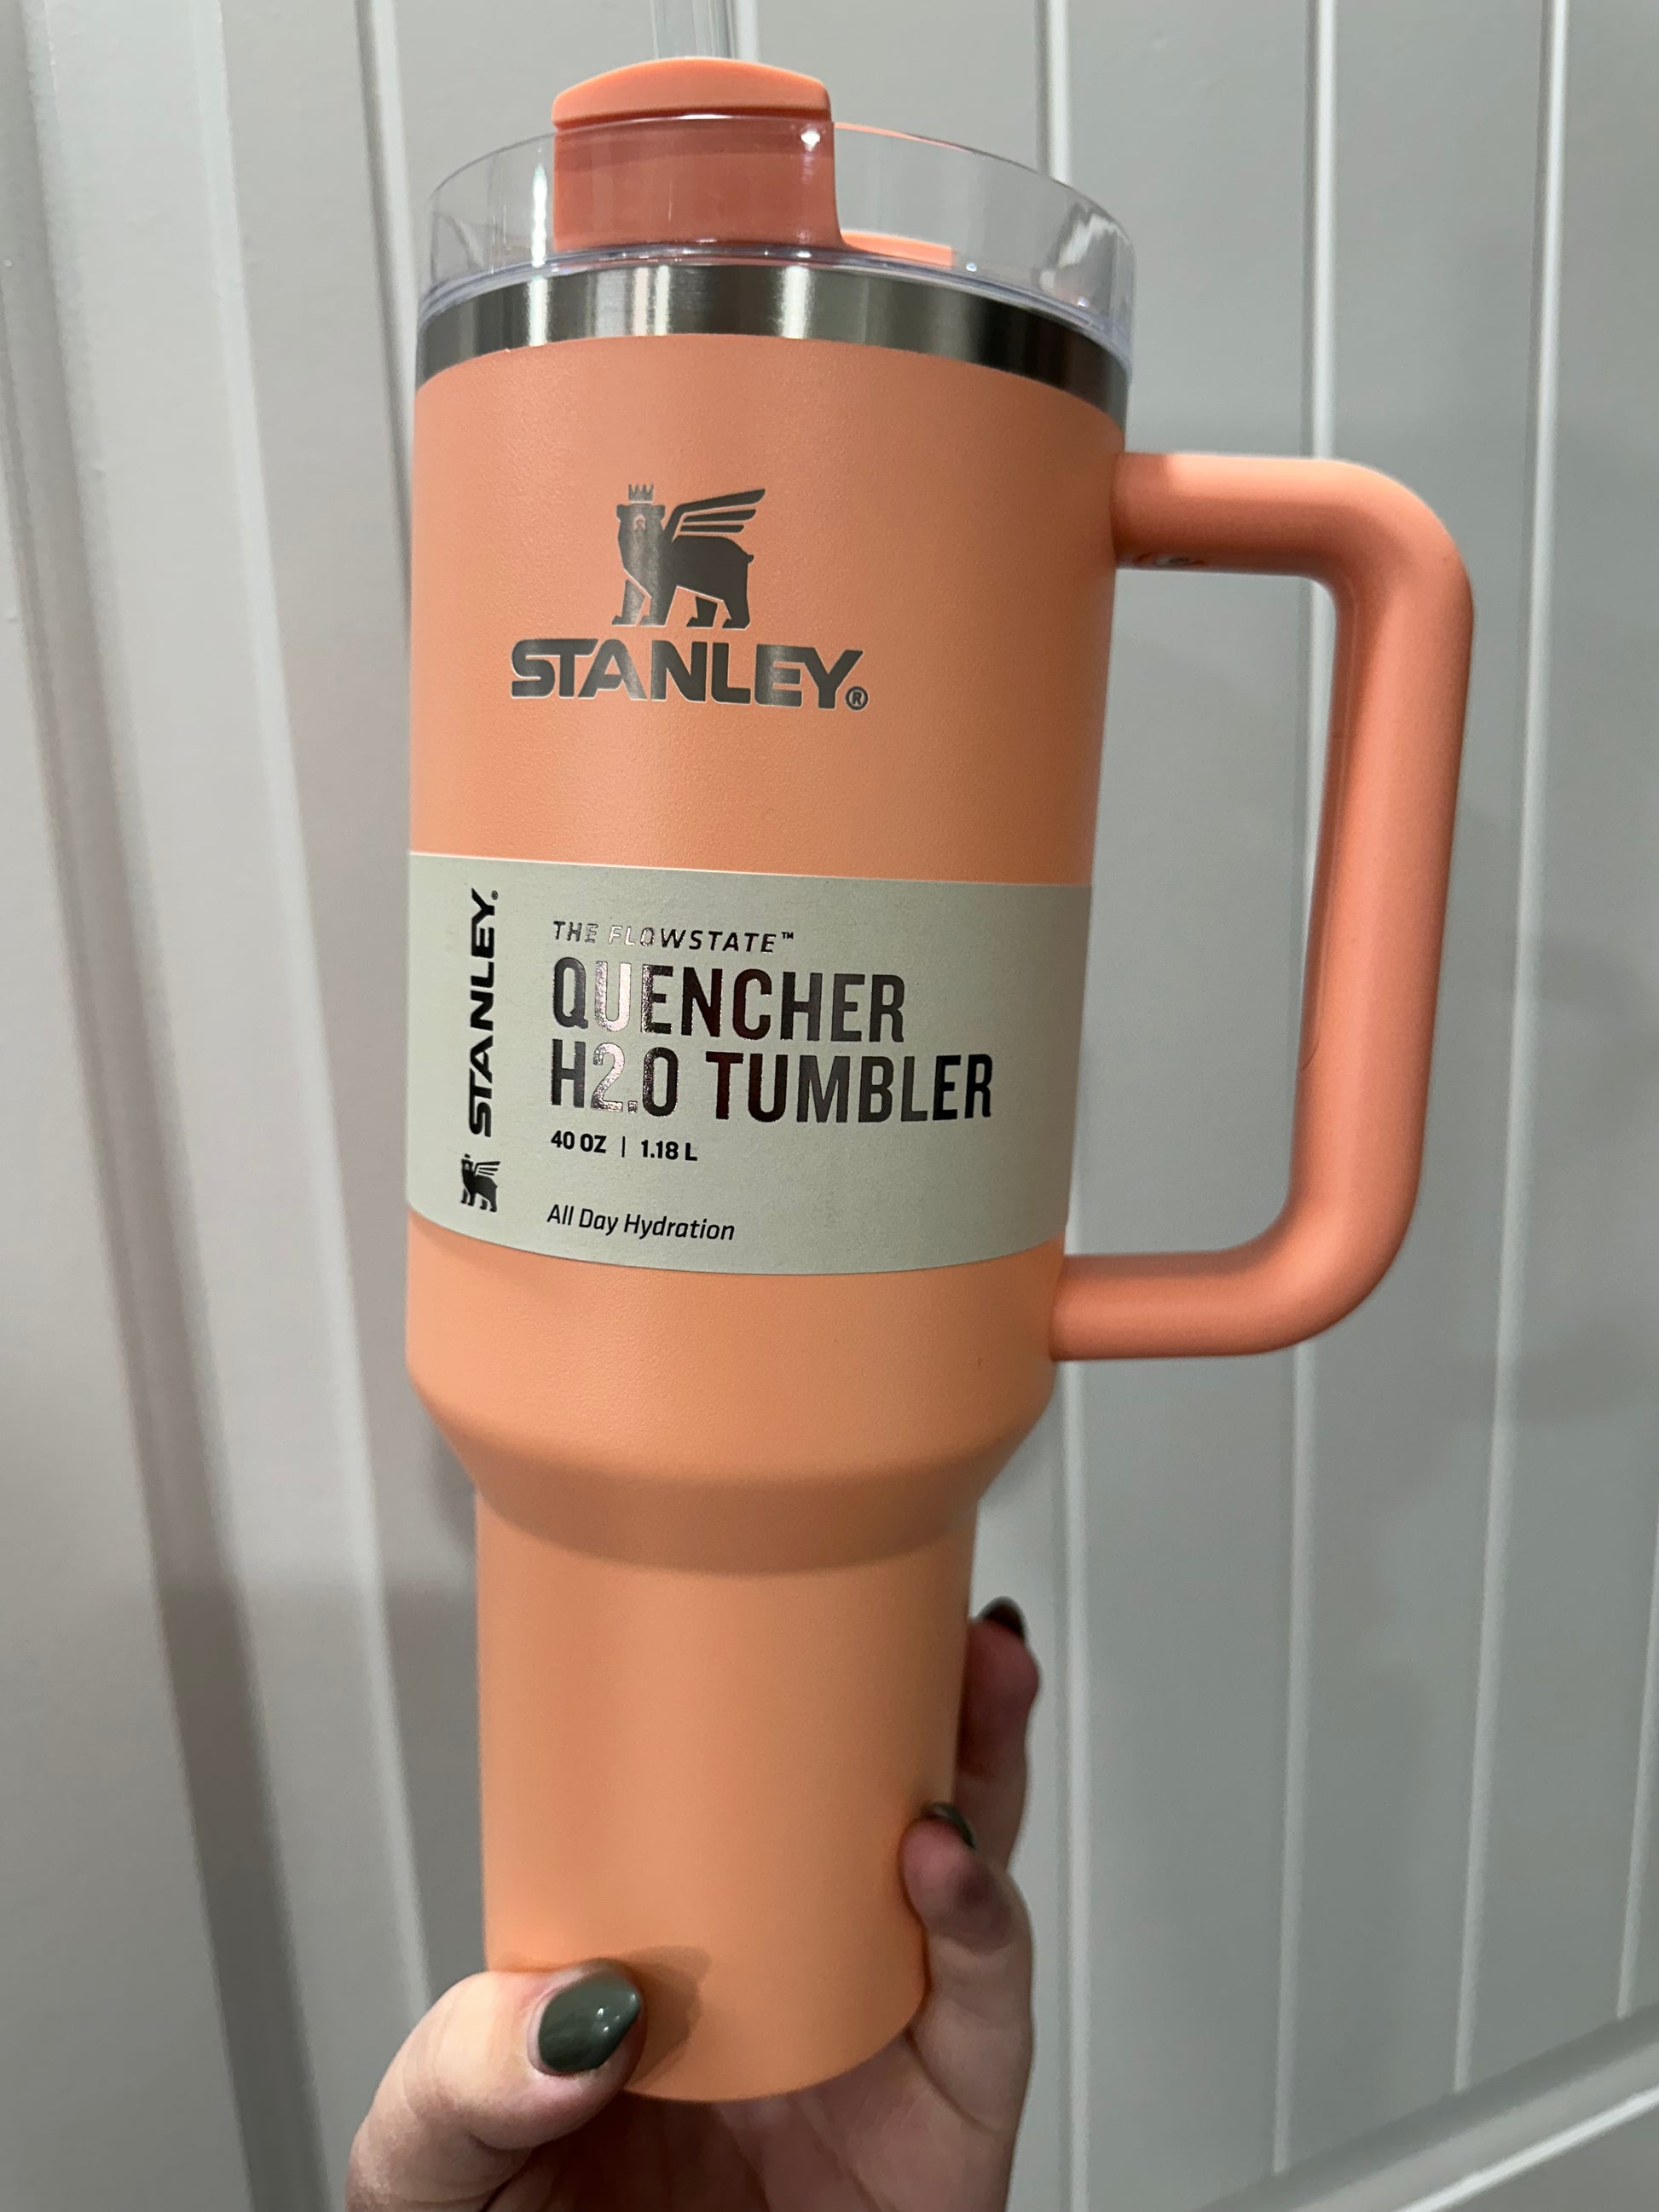 Stanley 30 oz. Quencher H2.0 FlowState Tumbler, Alpine Green